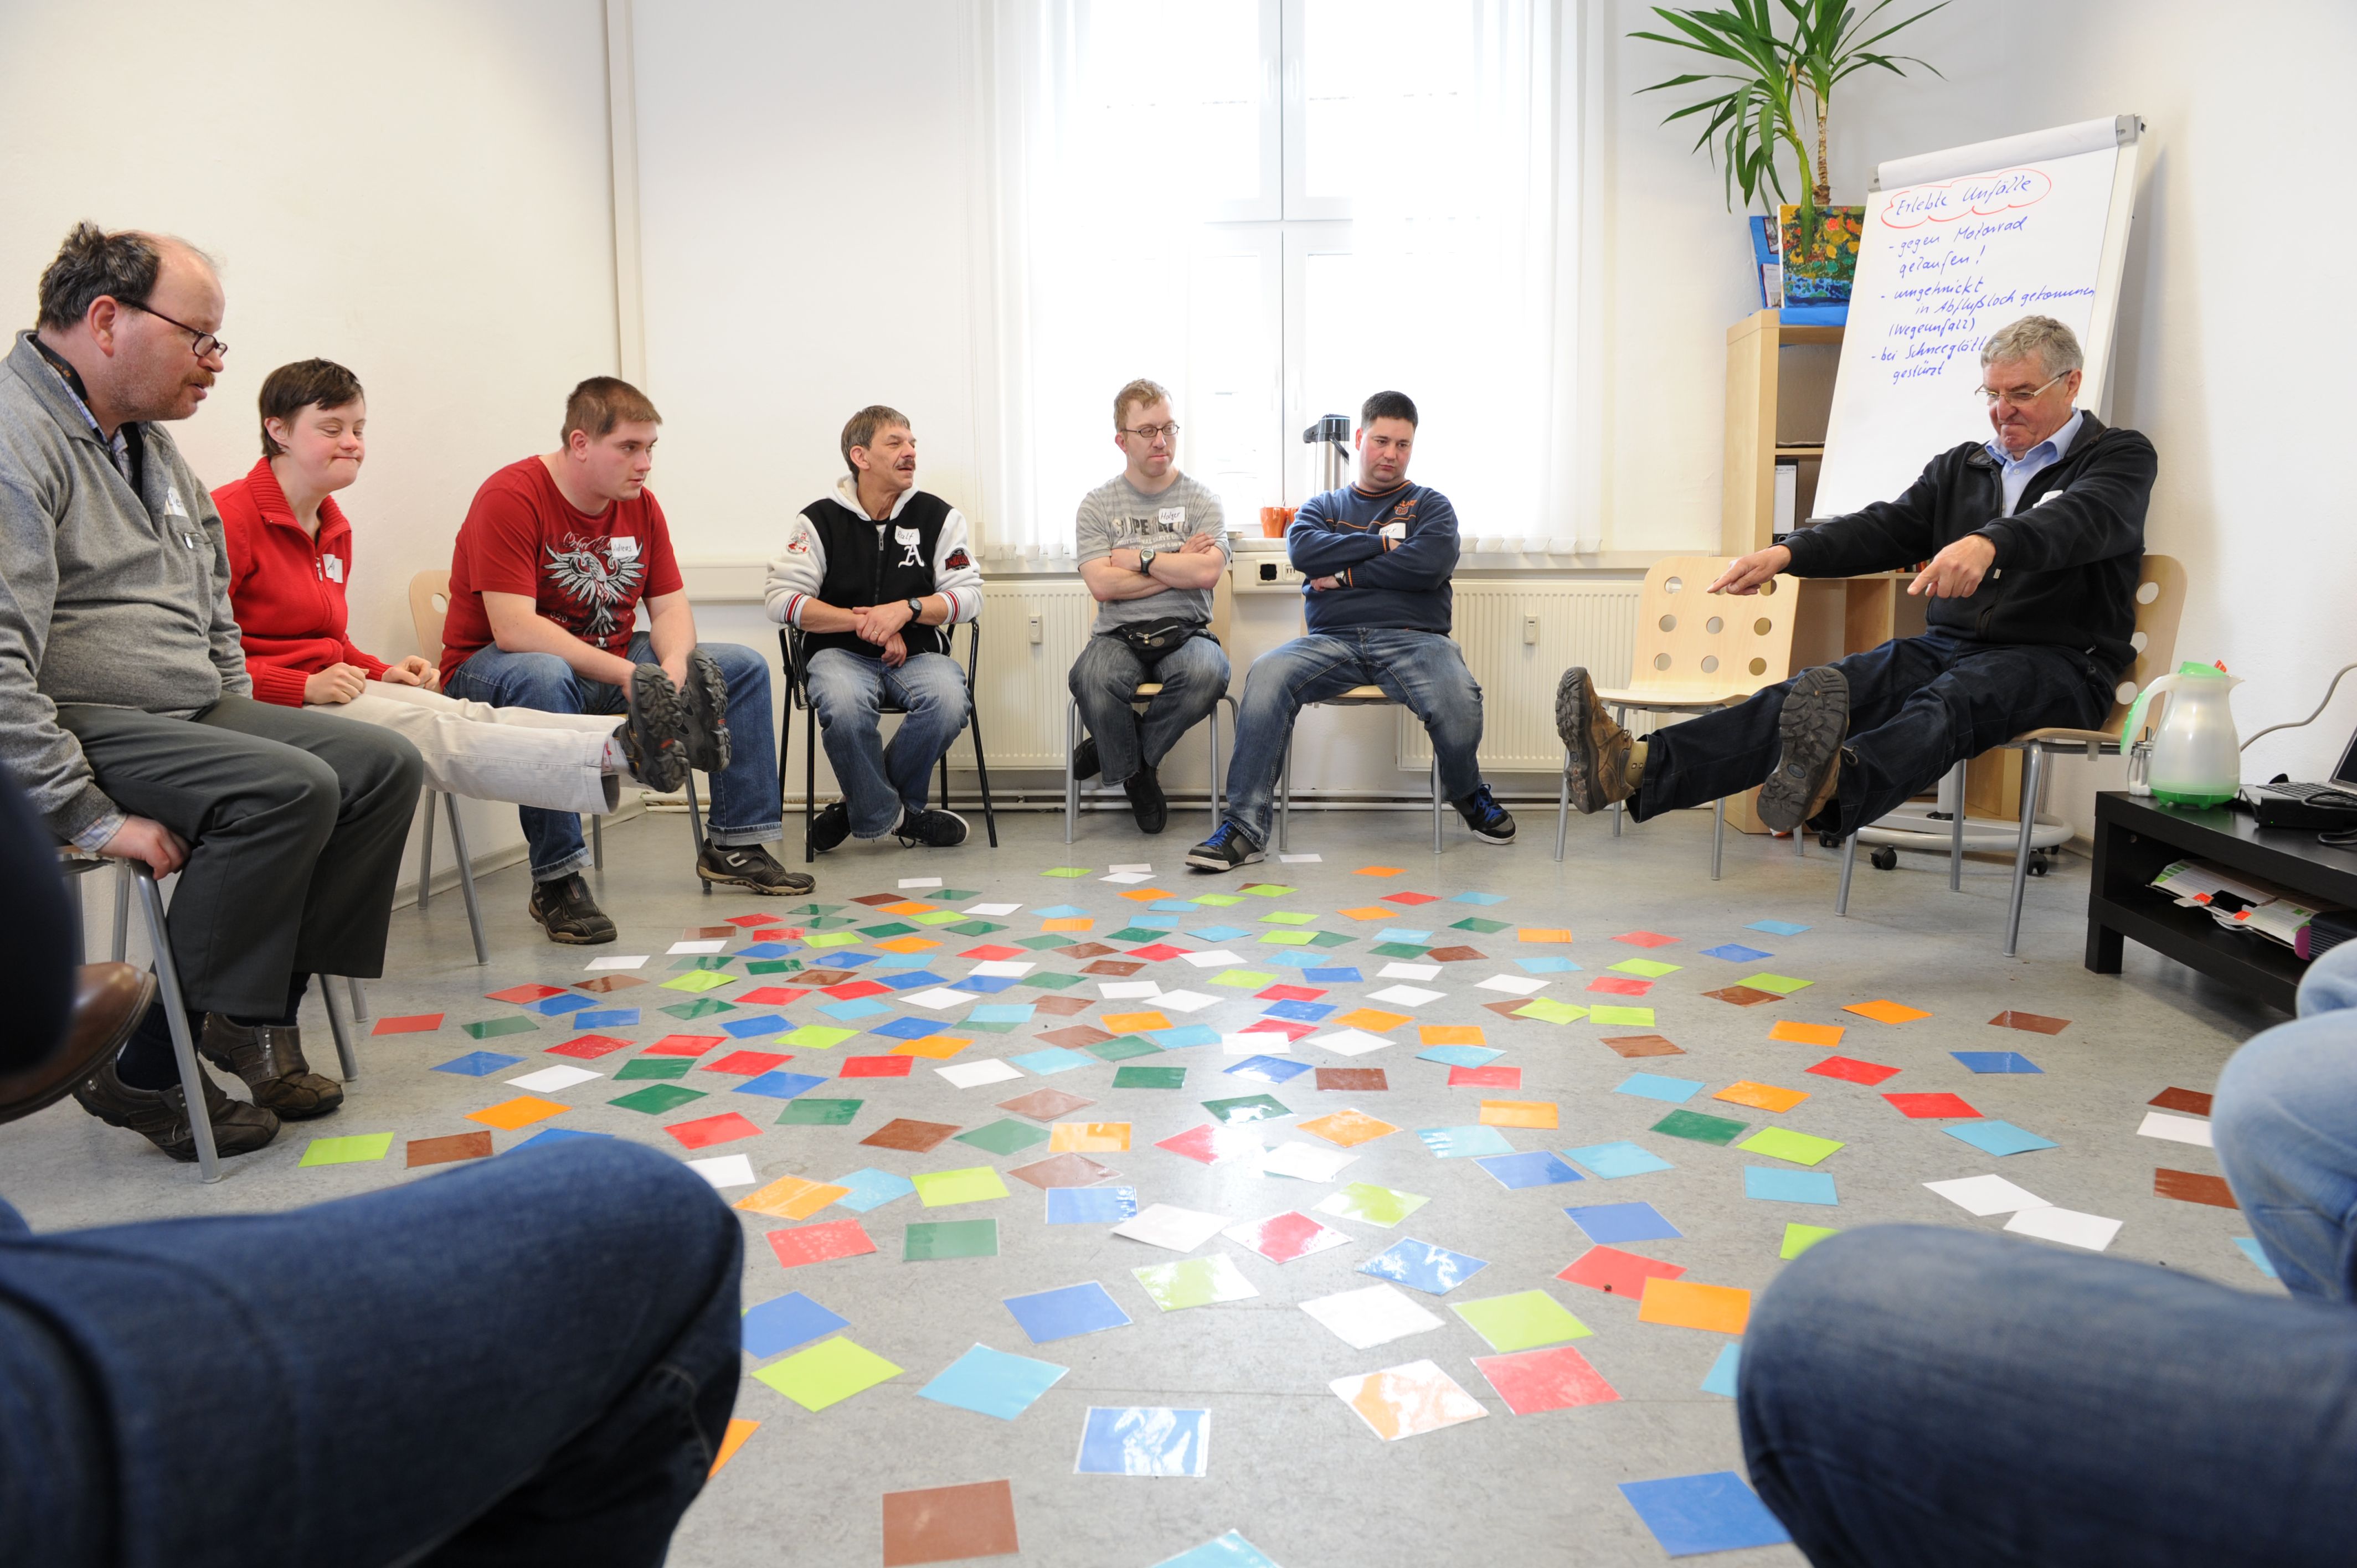 10 Personen sitzen im Kreis in einem Raum. Auf dem Boden liegen bunte Karten. Eine Person hebt die Beine und streckt die Arme nach vorne.